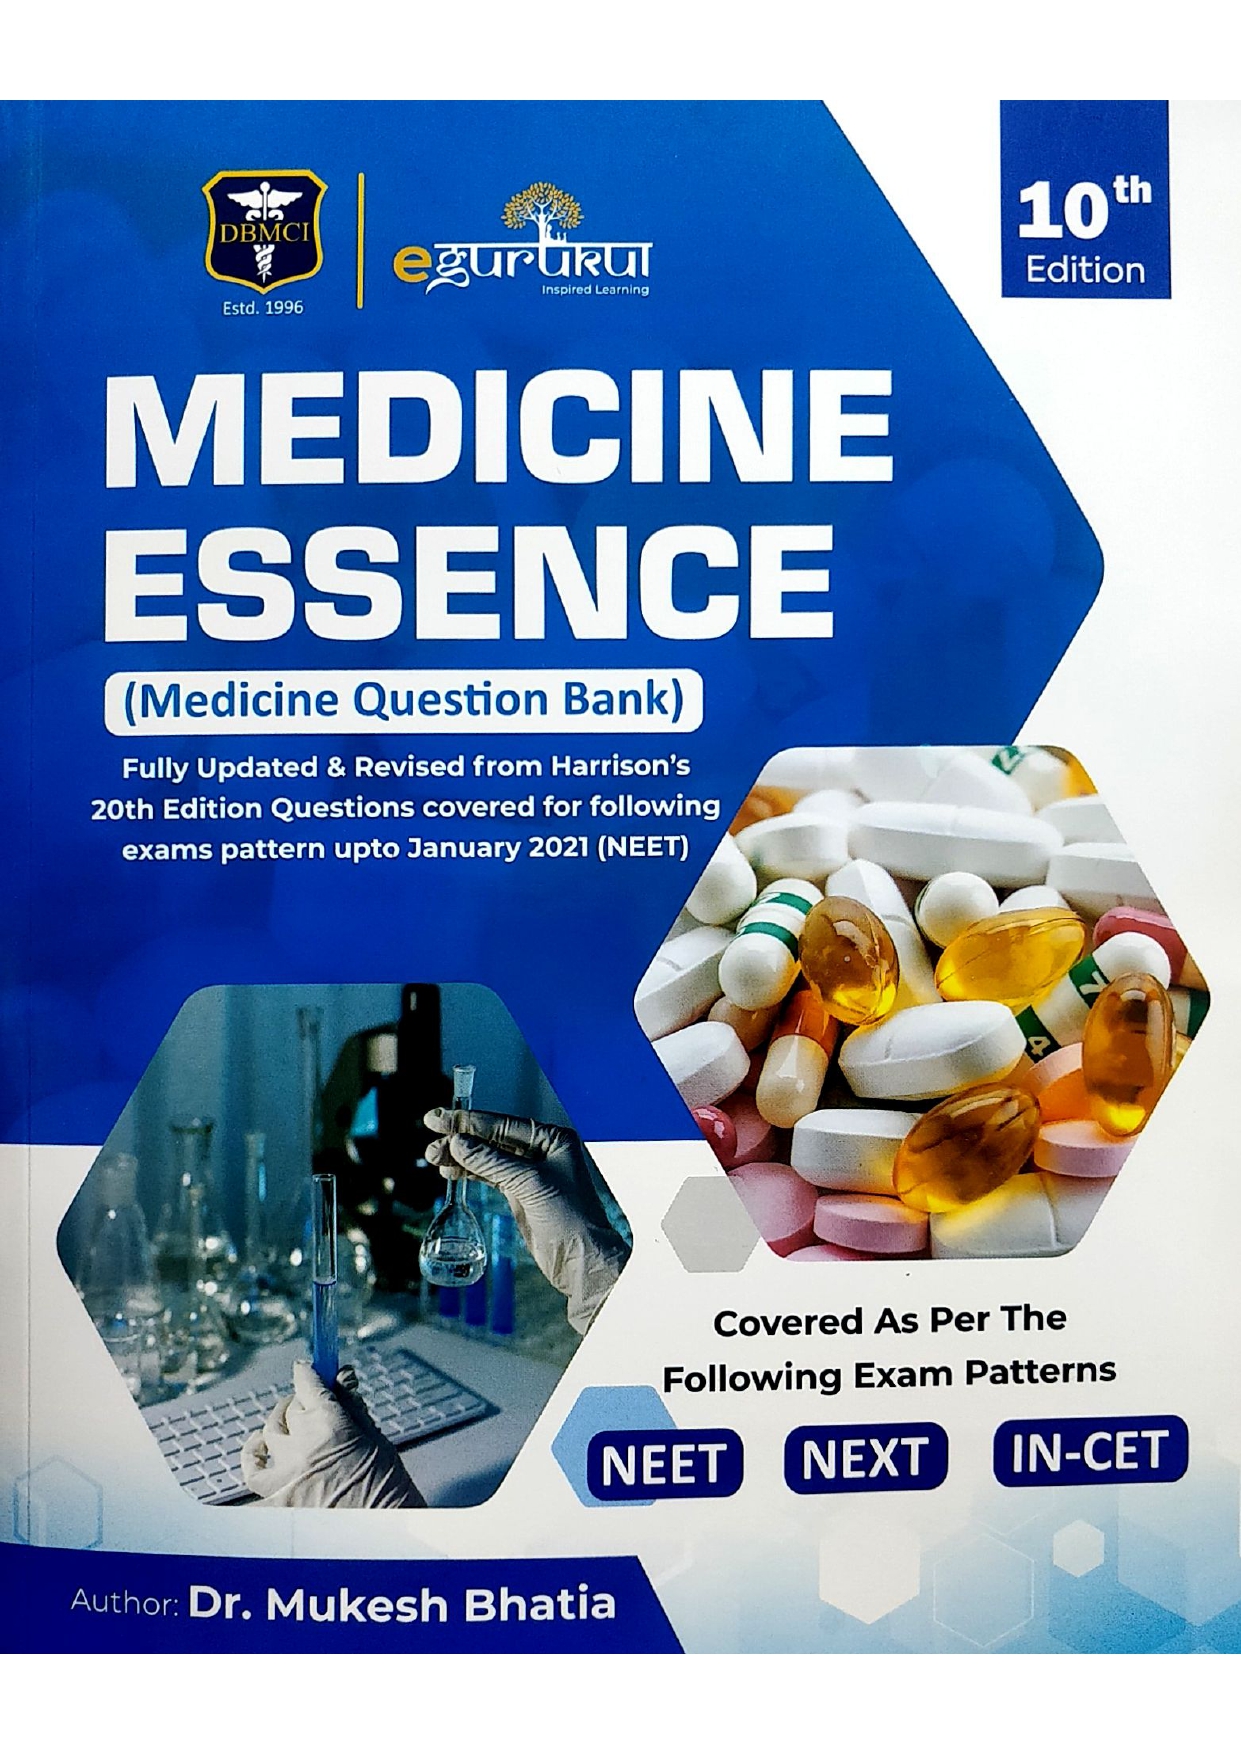 Medicine essence ( medicine question bank )